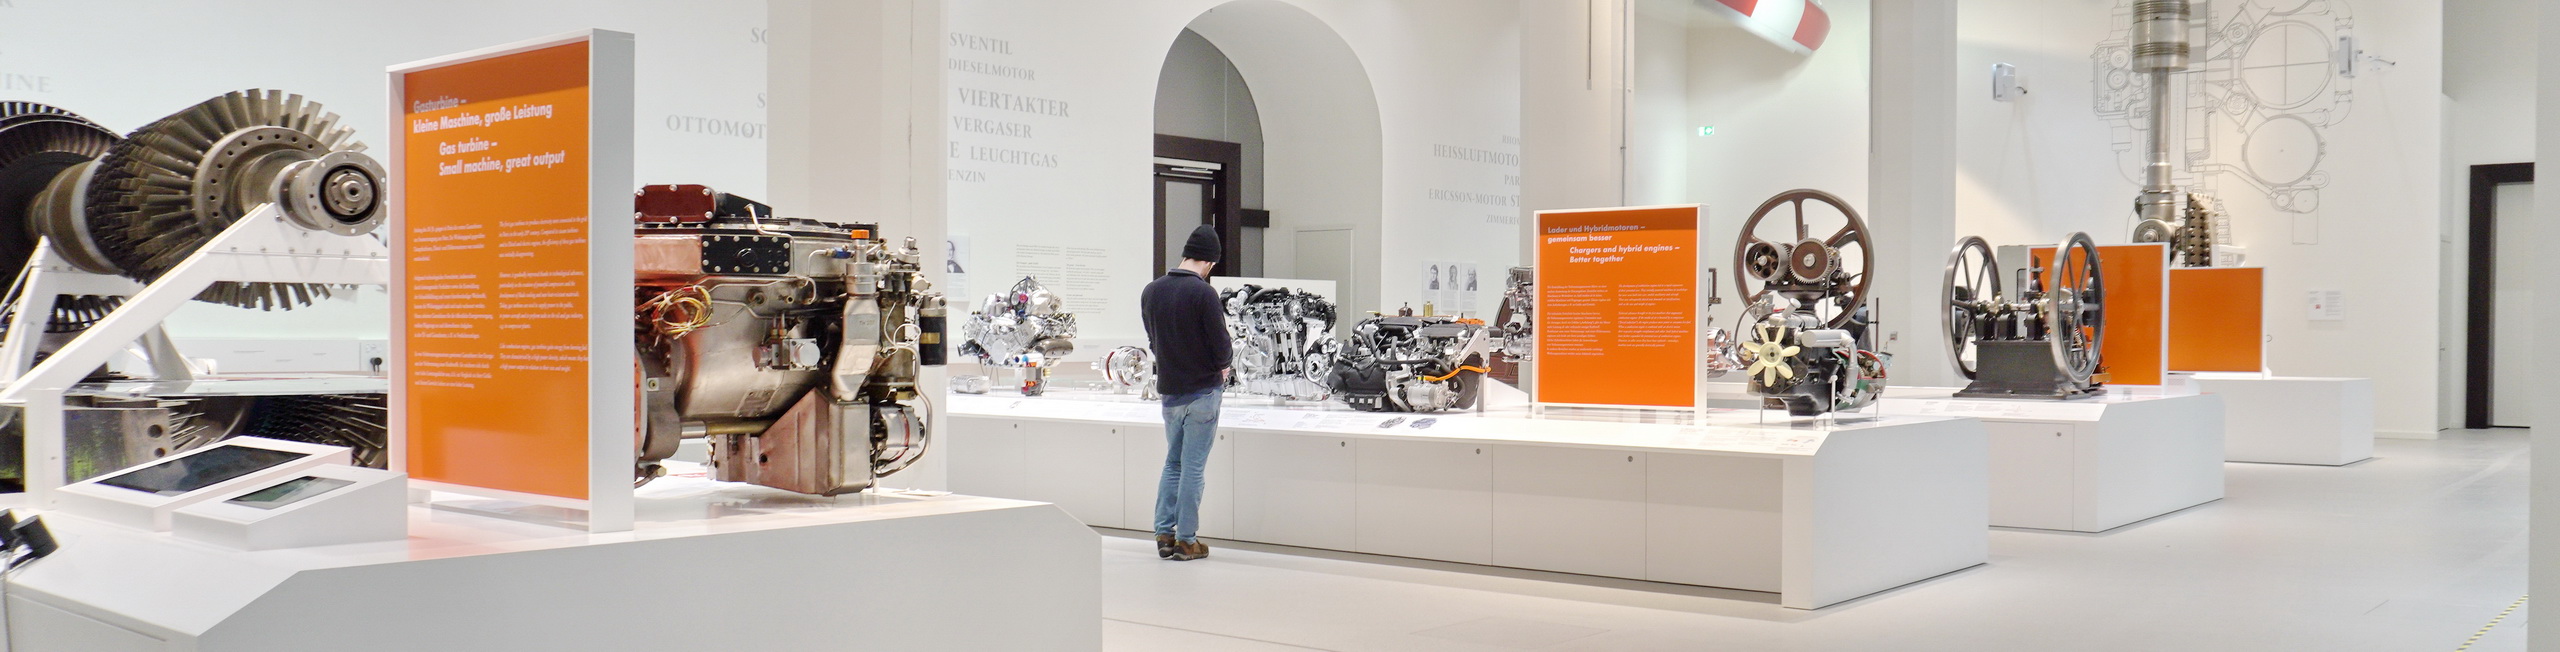 Bild Ausstellung Energie-Motoren - Deutsches Museum, München